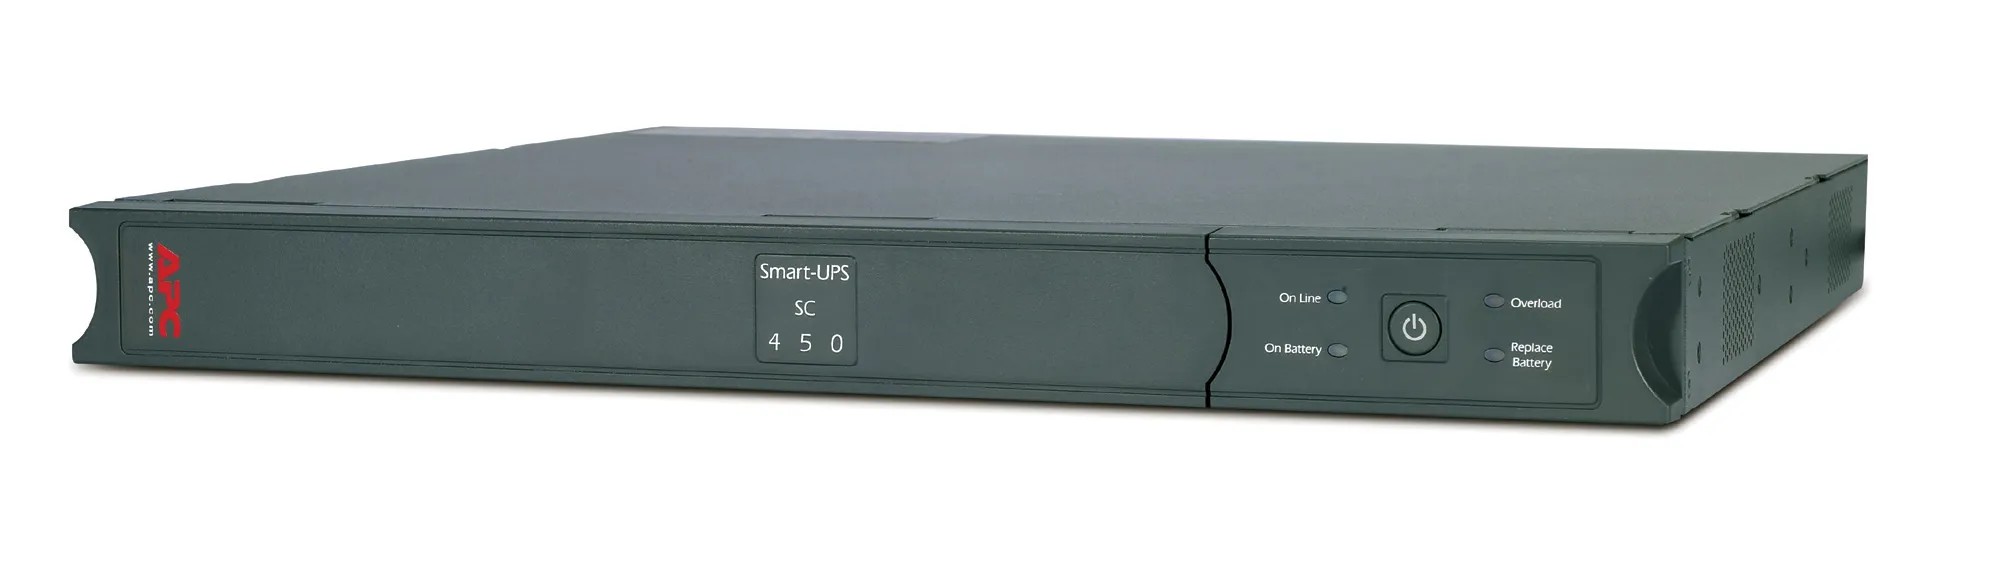 Источник бесперебойного питания APC Smart-UPS SC 450VA 1U в интернет-магазине, главное фото